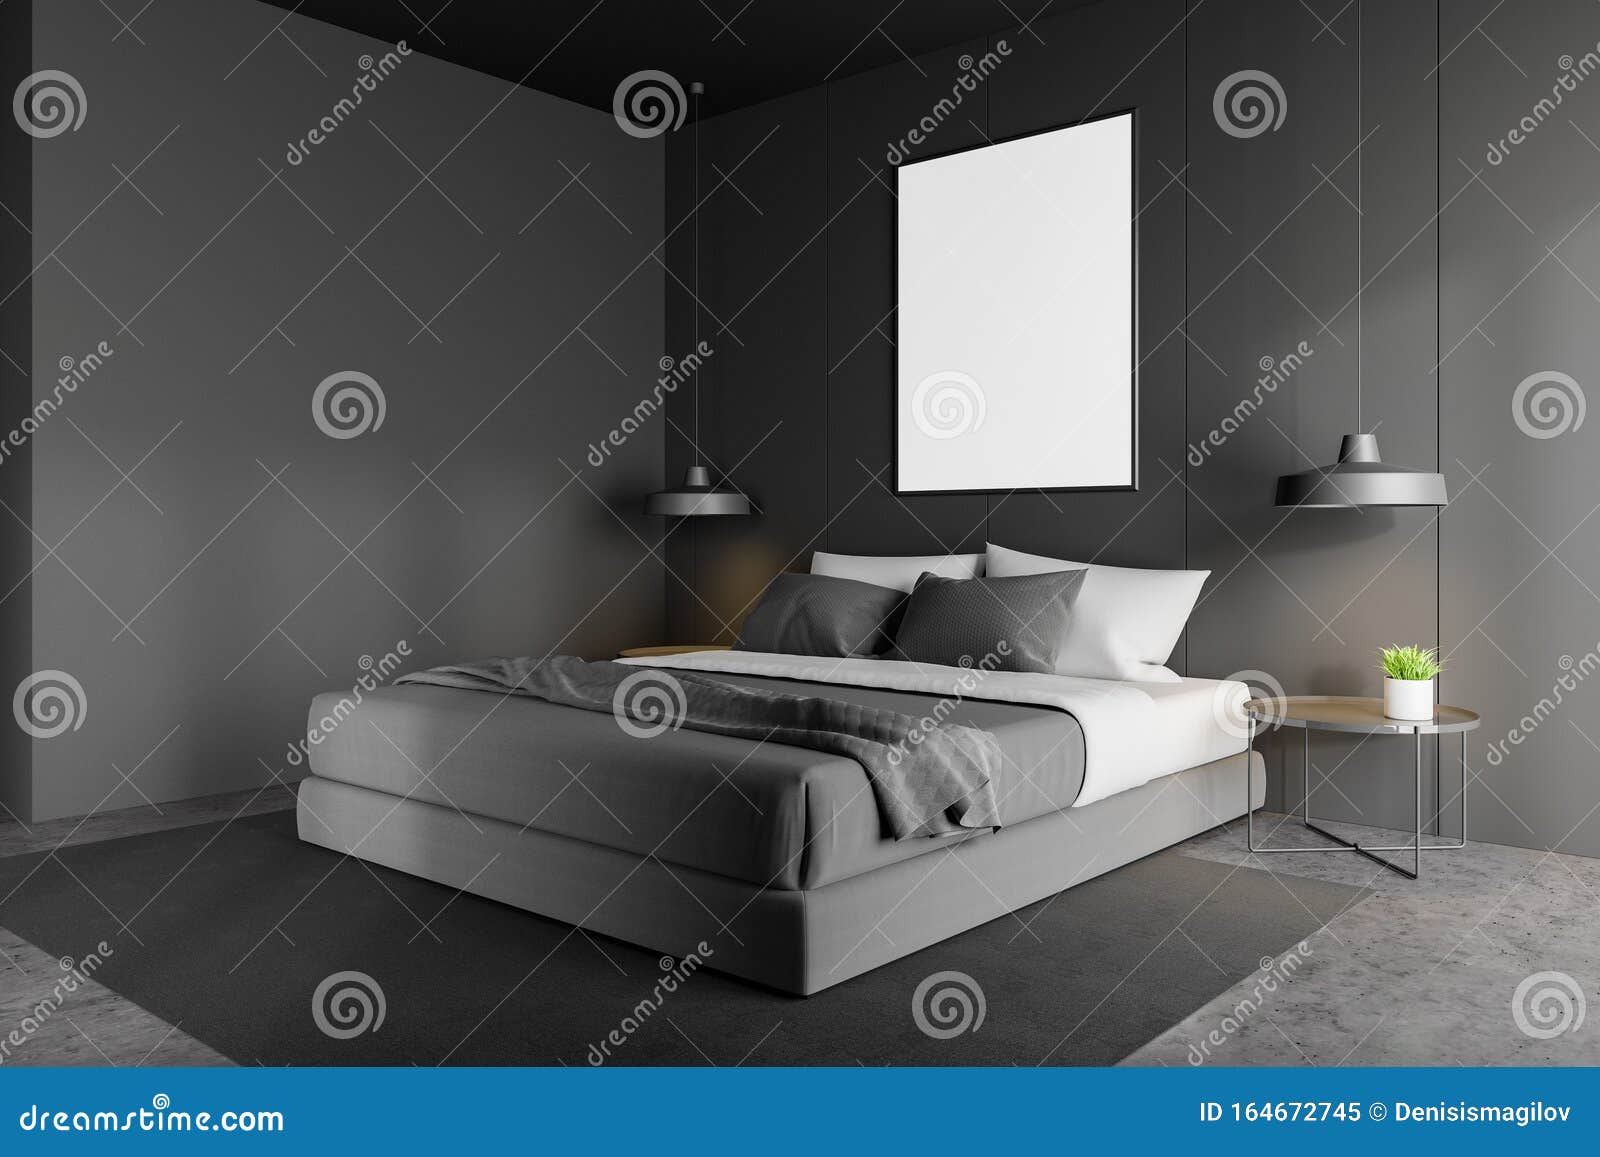 Esquina De Dormitorio Principal Gris Minimalista Con Afiche Stock De Ilustracion Ilustracion De Minimalista Afiche 164672745